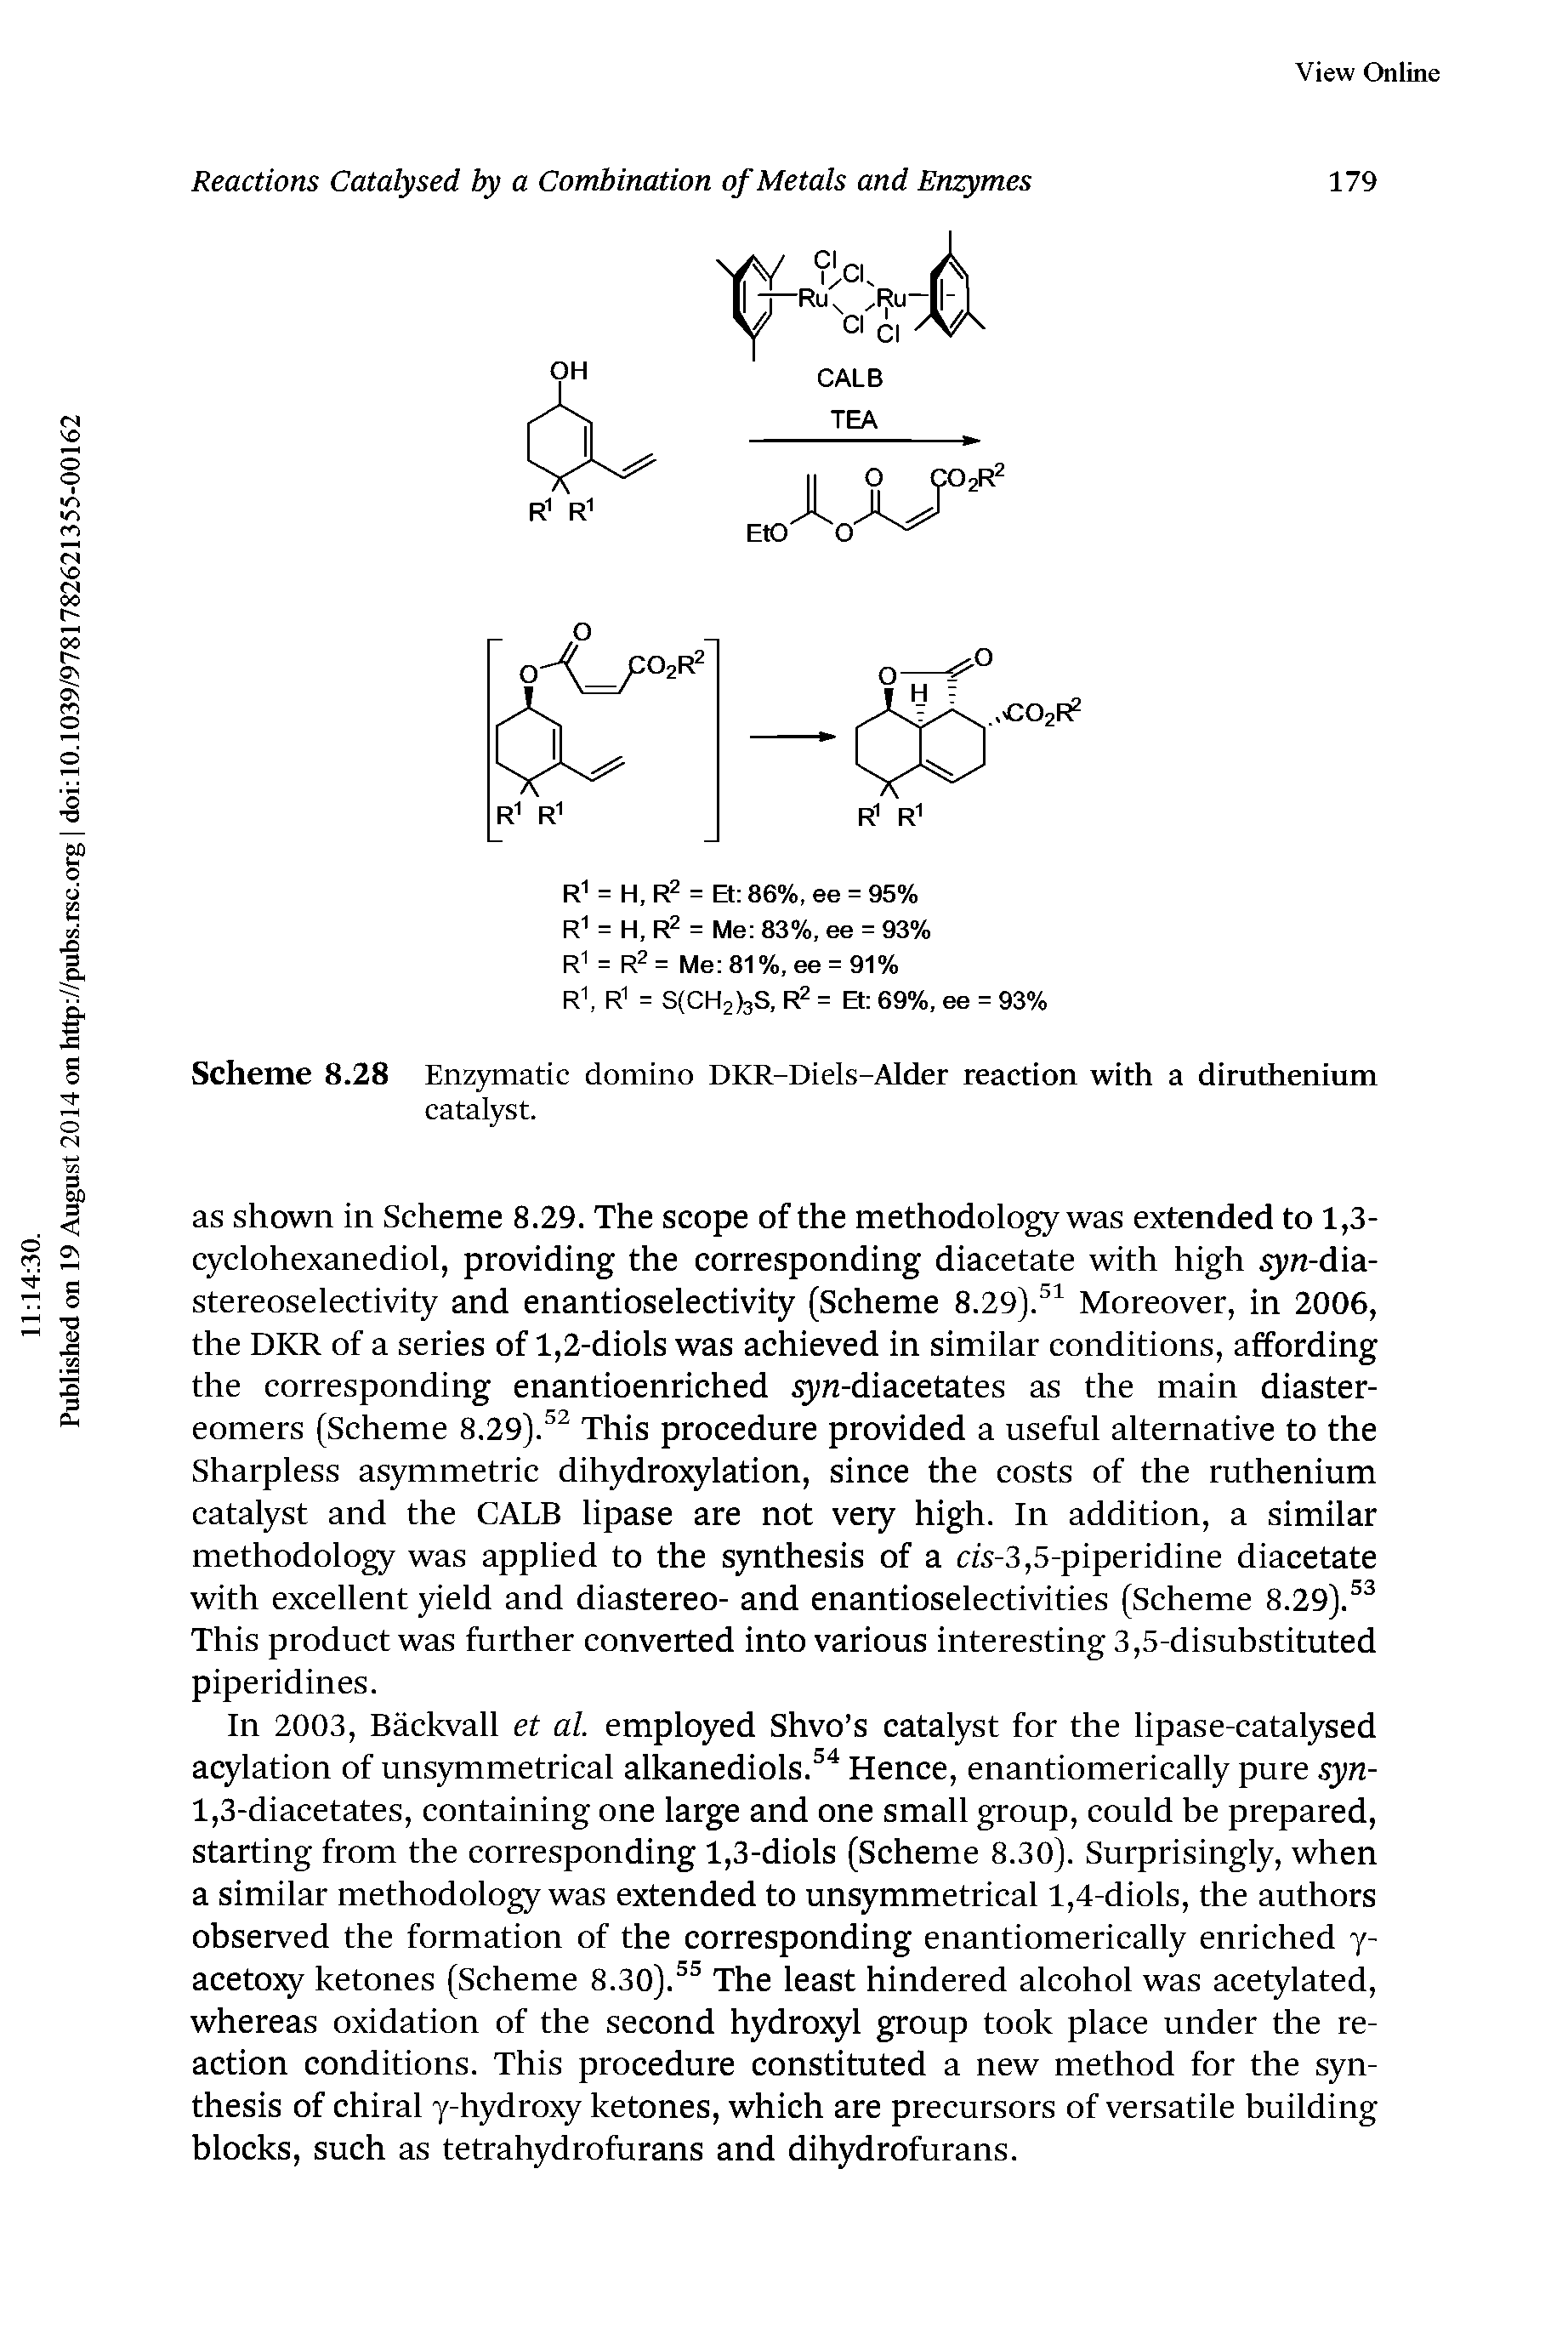 Scheme 8.28 Enzymatic domino DKR-Diels-Alder reaction with a diruthenium...